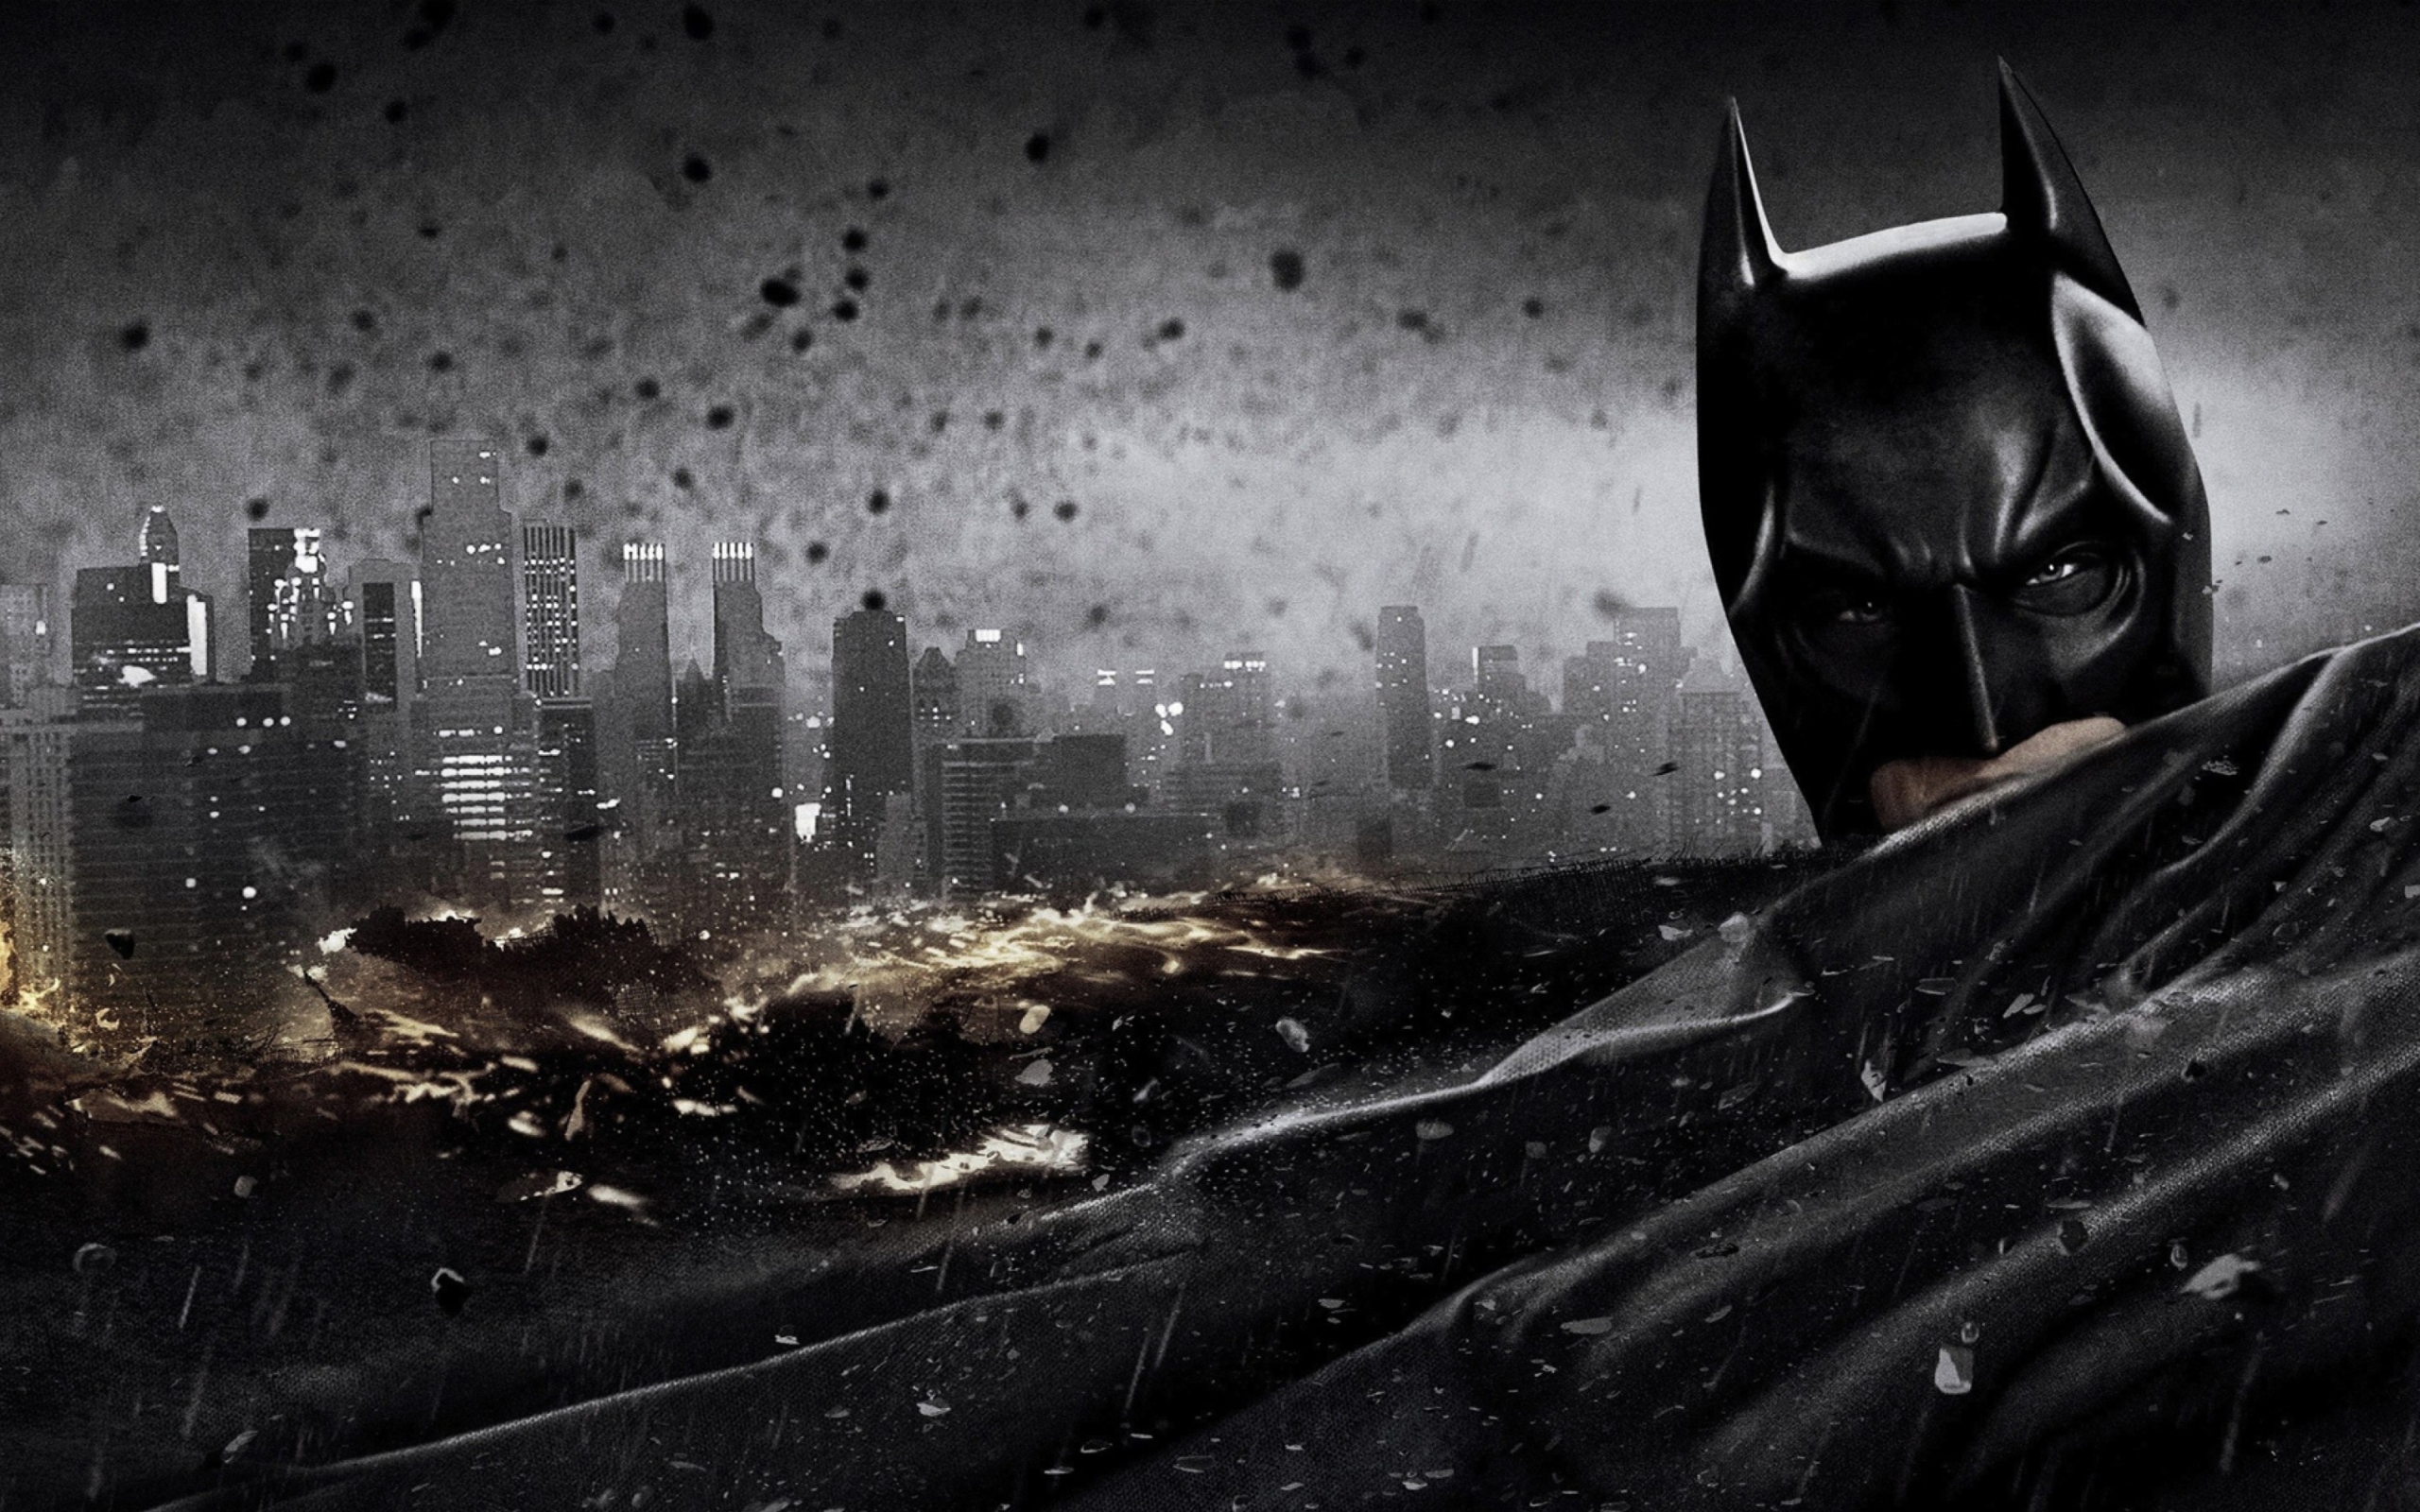 The Dark Knight - Batman wallpaper 2560x1600